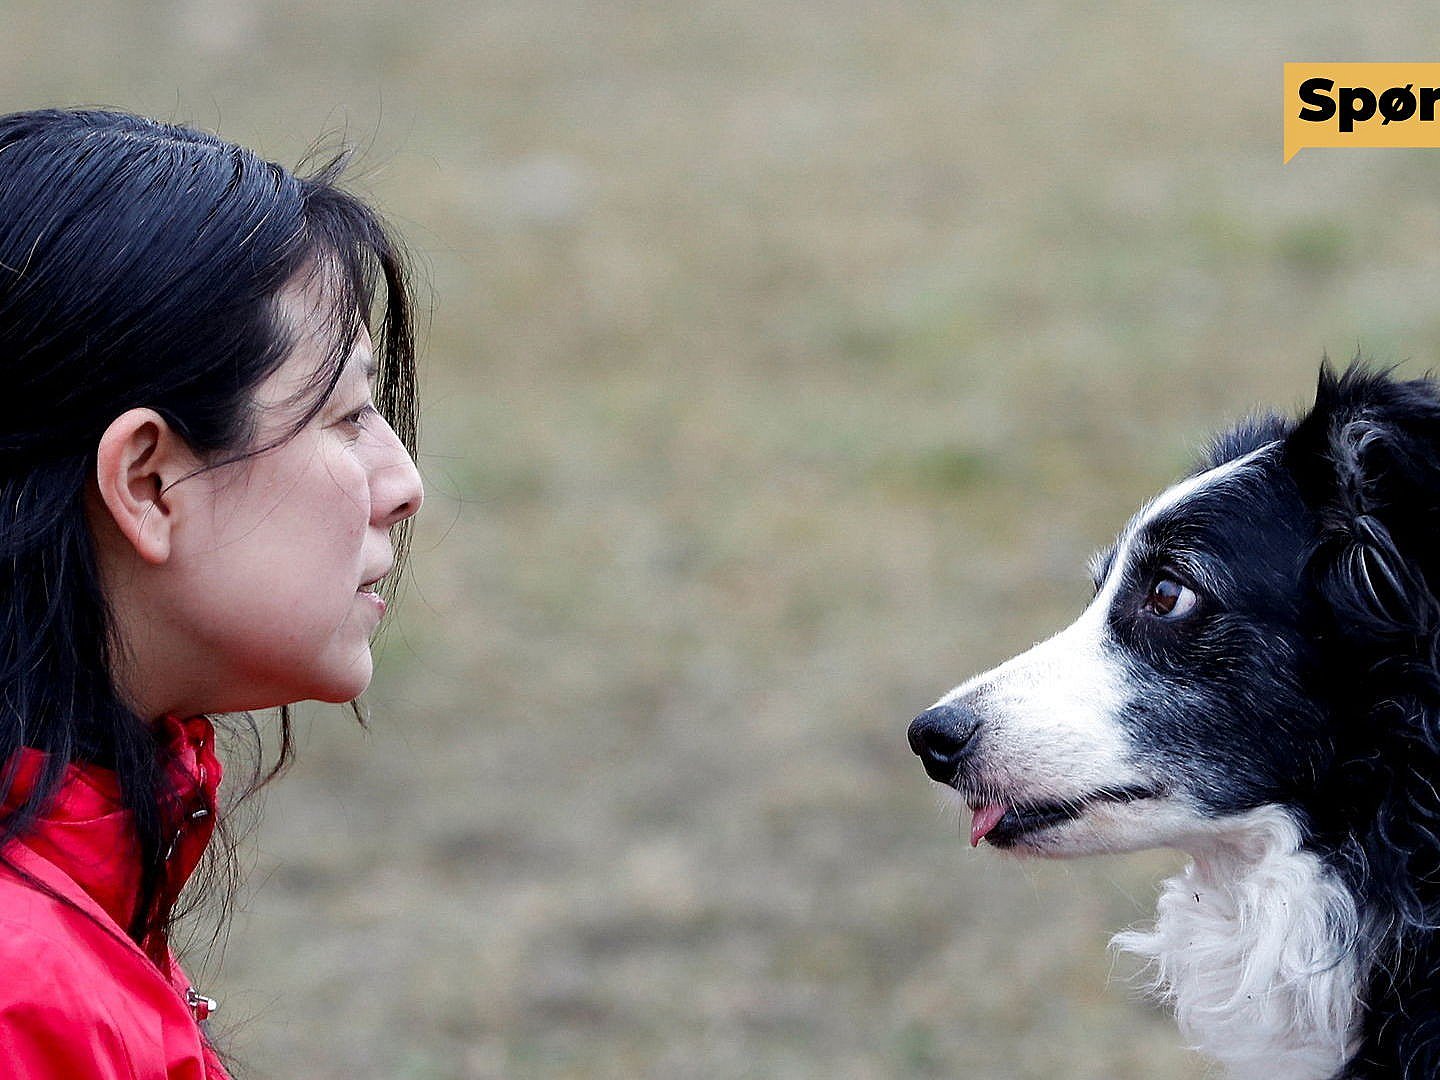 Jordbær Stort univers I Spørg os: Har hunde bedre hukommelse end mennesker? | TV 2 Kosmopol